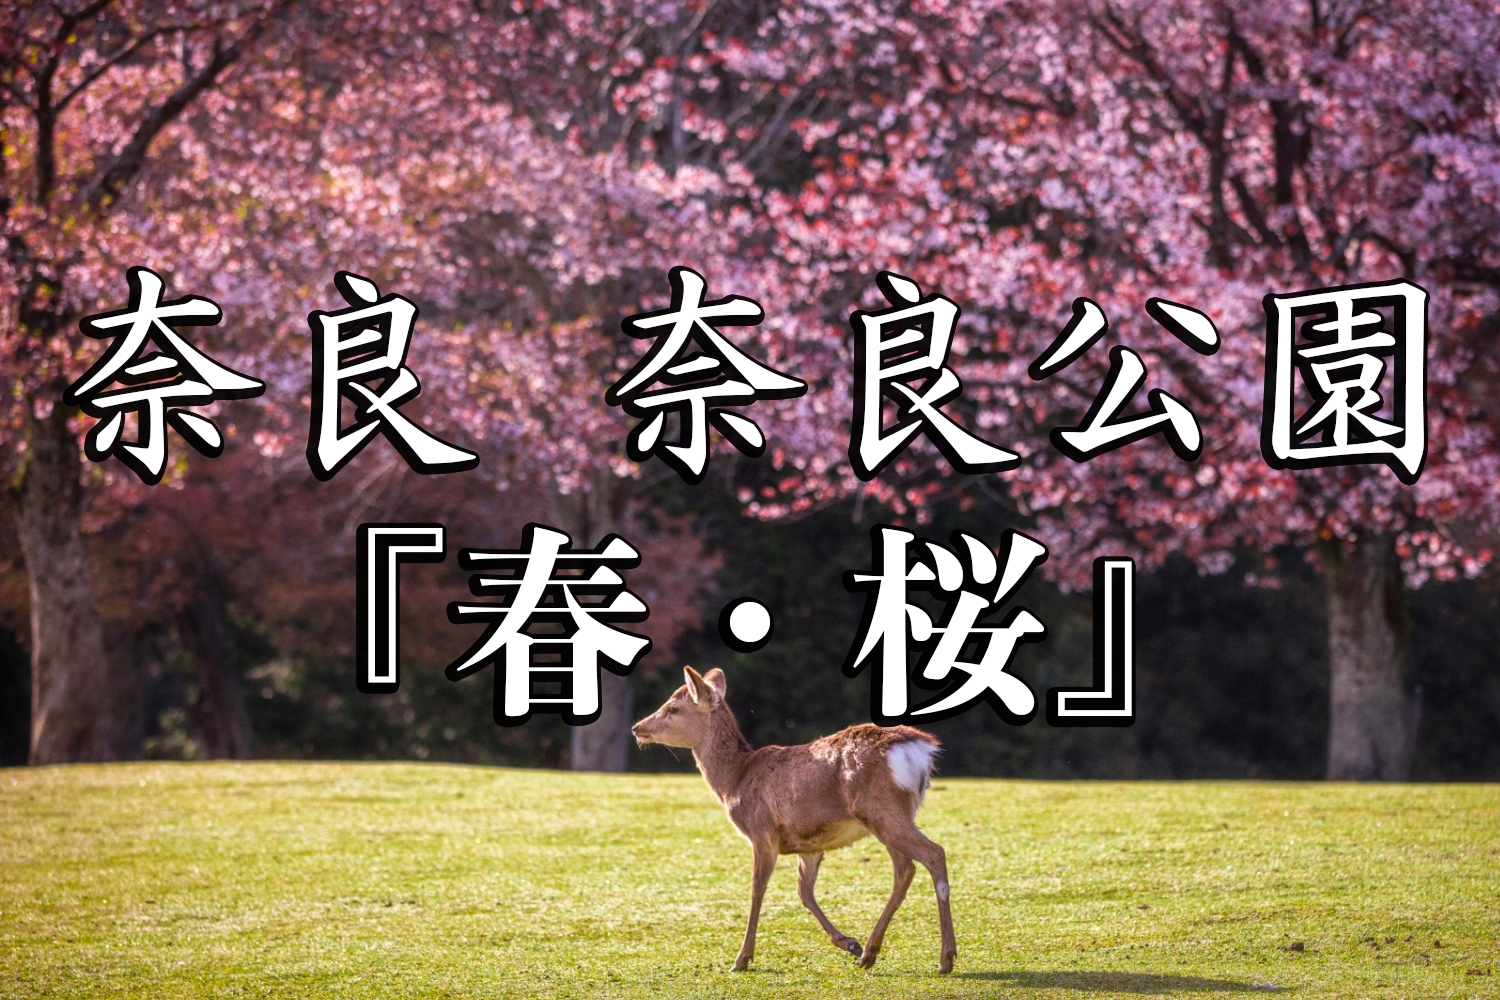 奈良県 奈良公園 鹿と桜の美しい景色が見れる春におすすめの桜スポット 写真の紹介 アクセス情報や駐車場情報など 写真や映像で紹介する関西 近畿の絶景カメラ 観光スポット